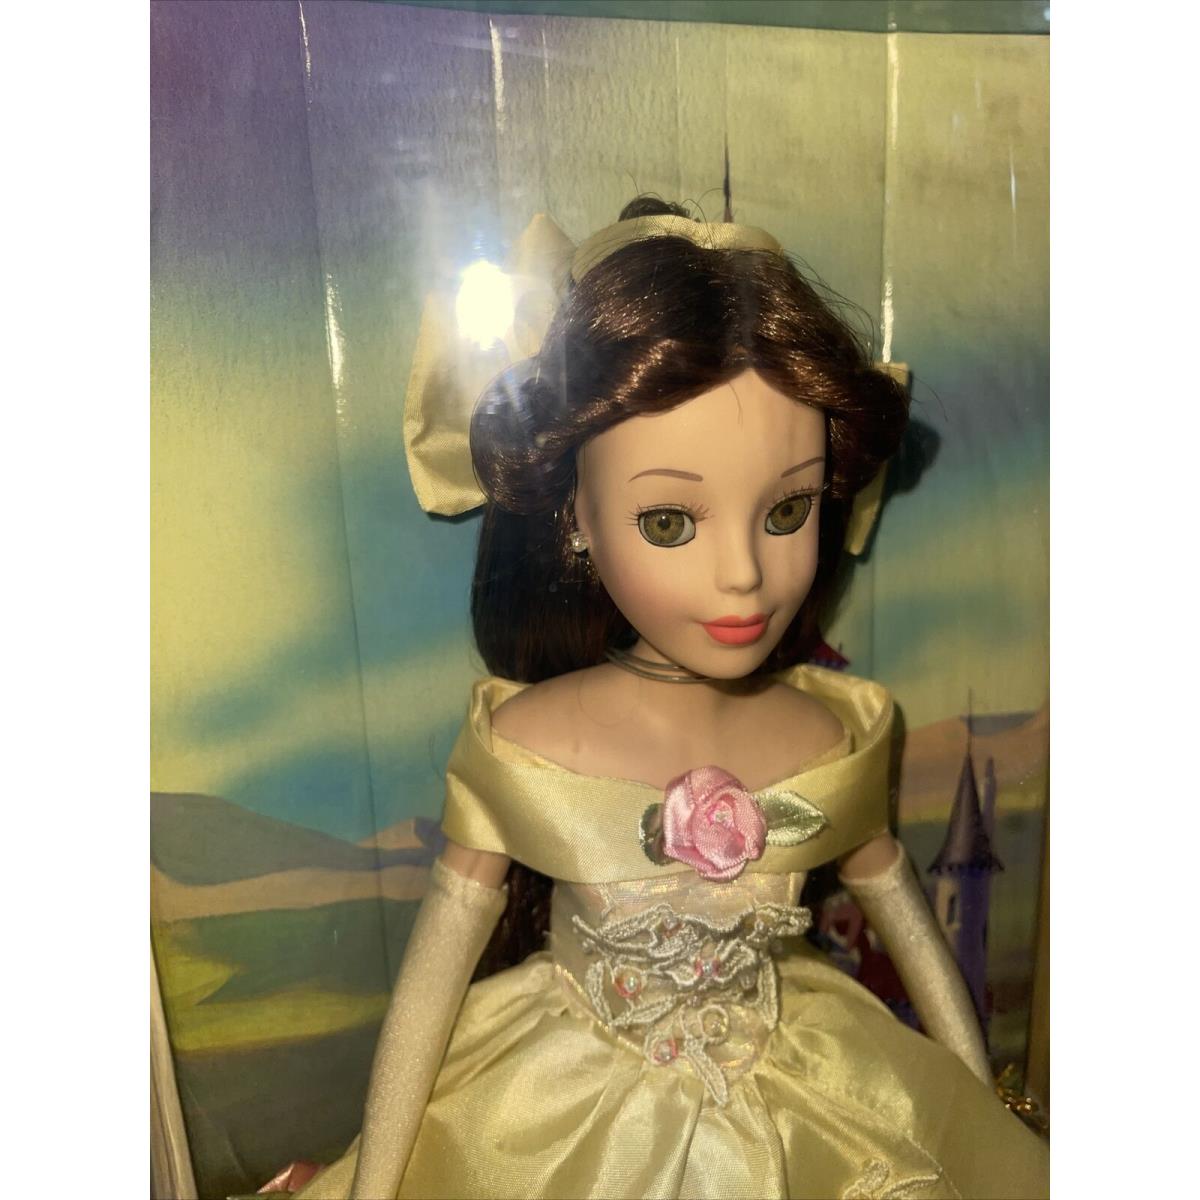 2004 Disney Princess Belle Porcelain Keepsake Doll Beauty Beast Brasskey